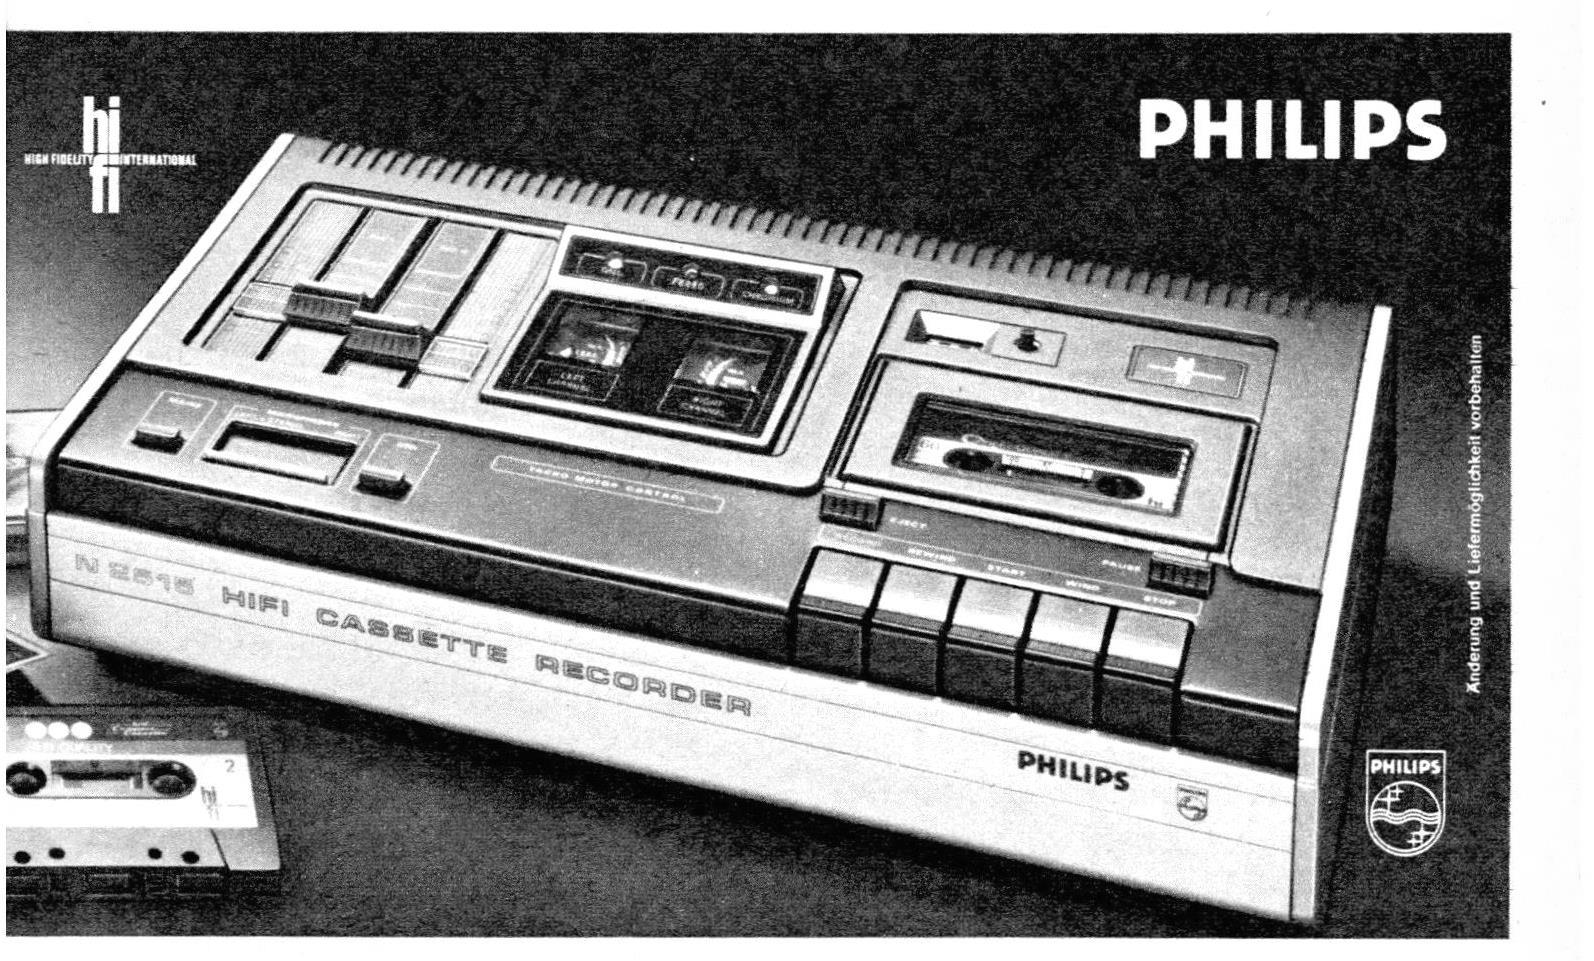 Phlips 1975 1.jpg